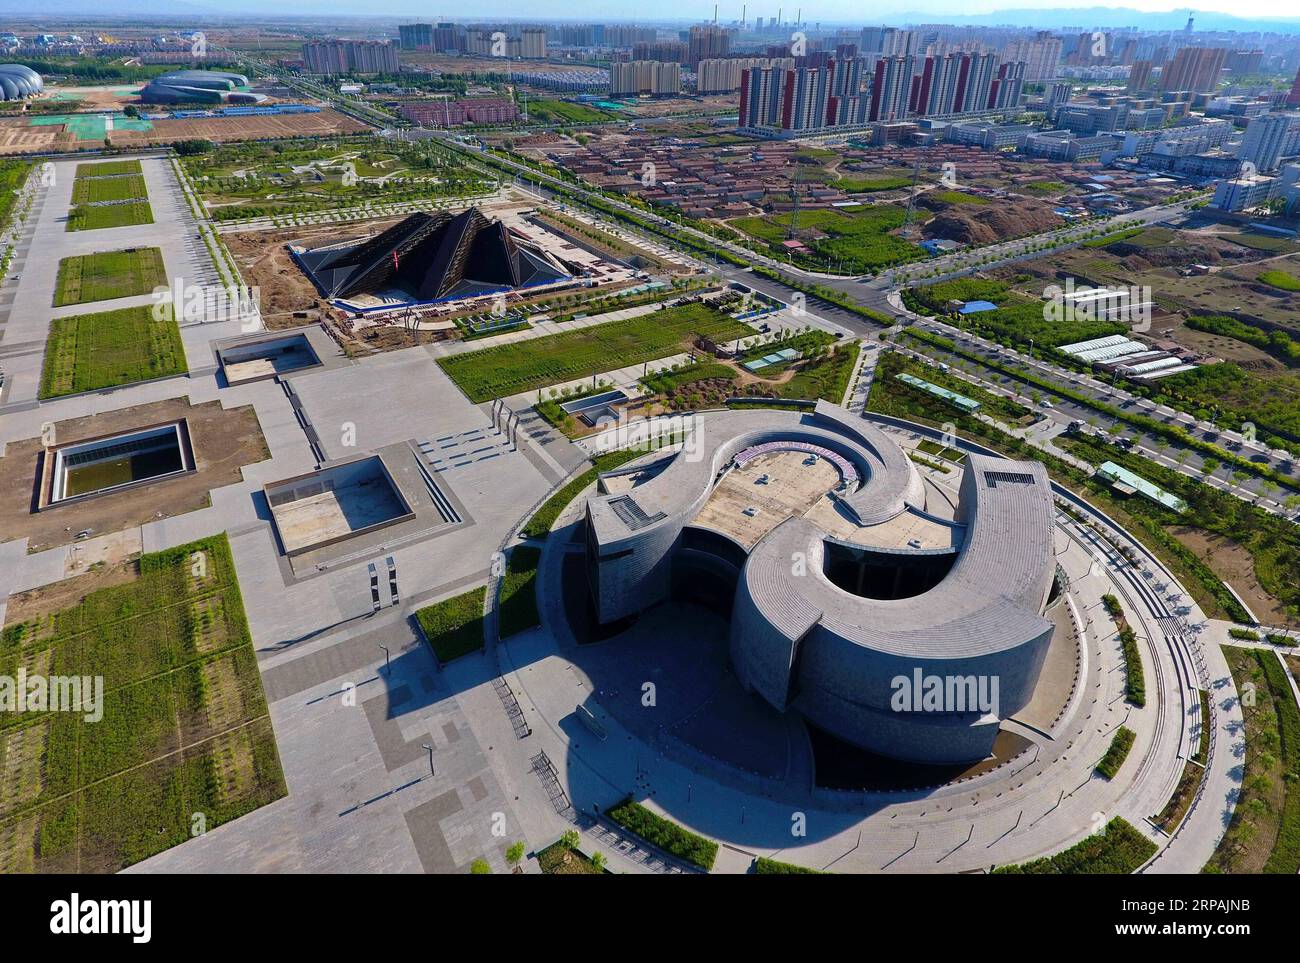 (190513) -- PECHINO, 13 maggio 2019 (Xinhua) -- foto aerea scattata il 17 maggio 2017 mostra una vista della città di Datong, nella provincia dello Shanxi della Cina settentrionale. L'evento a tema dello Shanxi Day, che si è tenuto nell'ambito della mostra internazionale di orticoltura di Pechino, ha avuto inizio a Pechino il 12 maggio. Lo Shanxi Garden mette in mostra il suo impegno nell'ecologia e nel rimboschimento, nonché il suo concetto di sviluppo verde all'expo in corso. Non facendo più affidamento principalmente sulla sua industria carboniera per la crescita, Shanxi si è impegnata a sviluppare energia pulita e altre industrie emergenti per trovare un equilibrio tra la protezione dell'ambiente e. Foto Stock